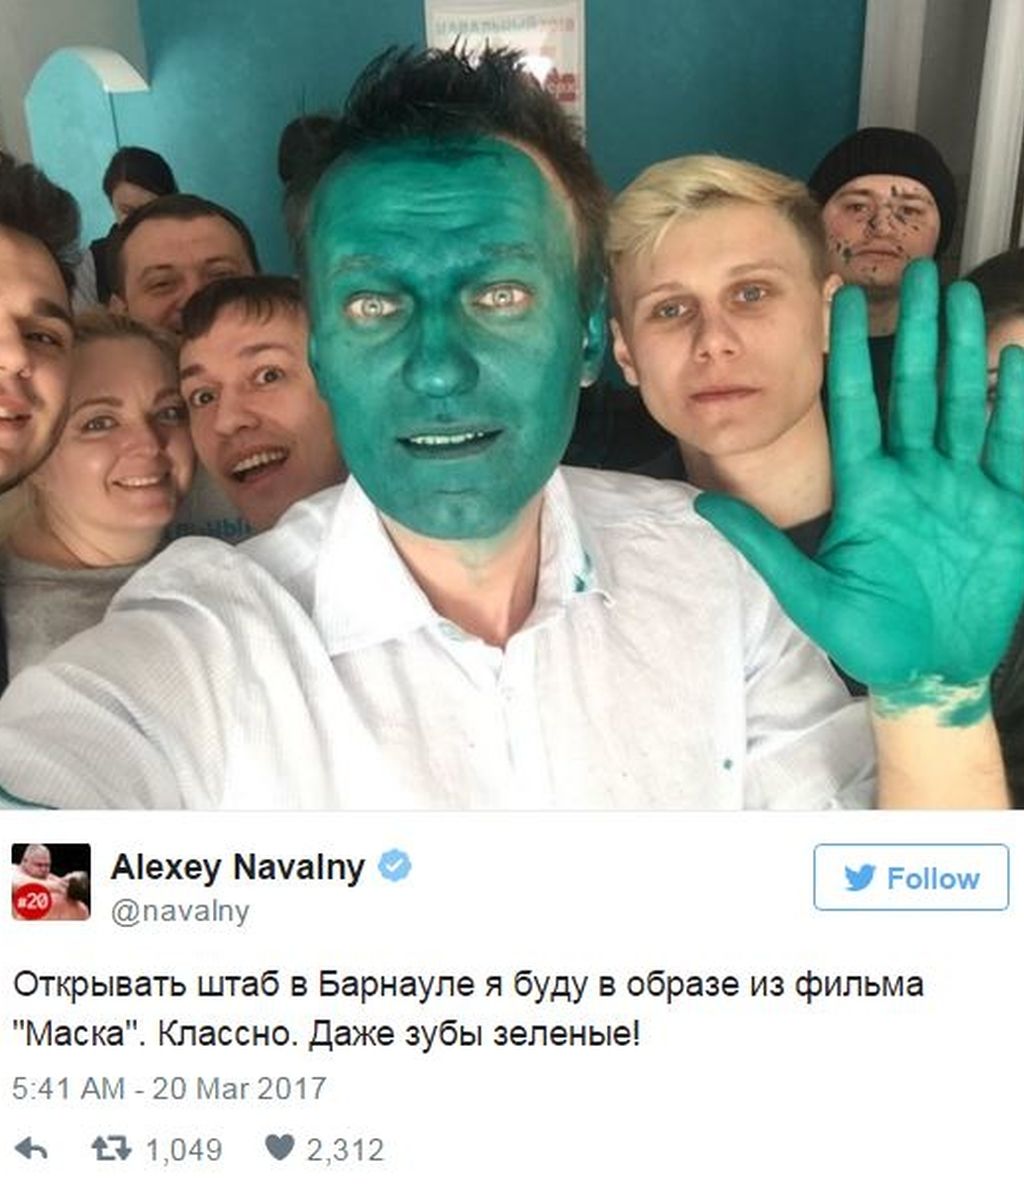 HoyEnLaRed: la oposición rusa se pinta la cara de verde